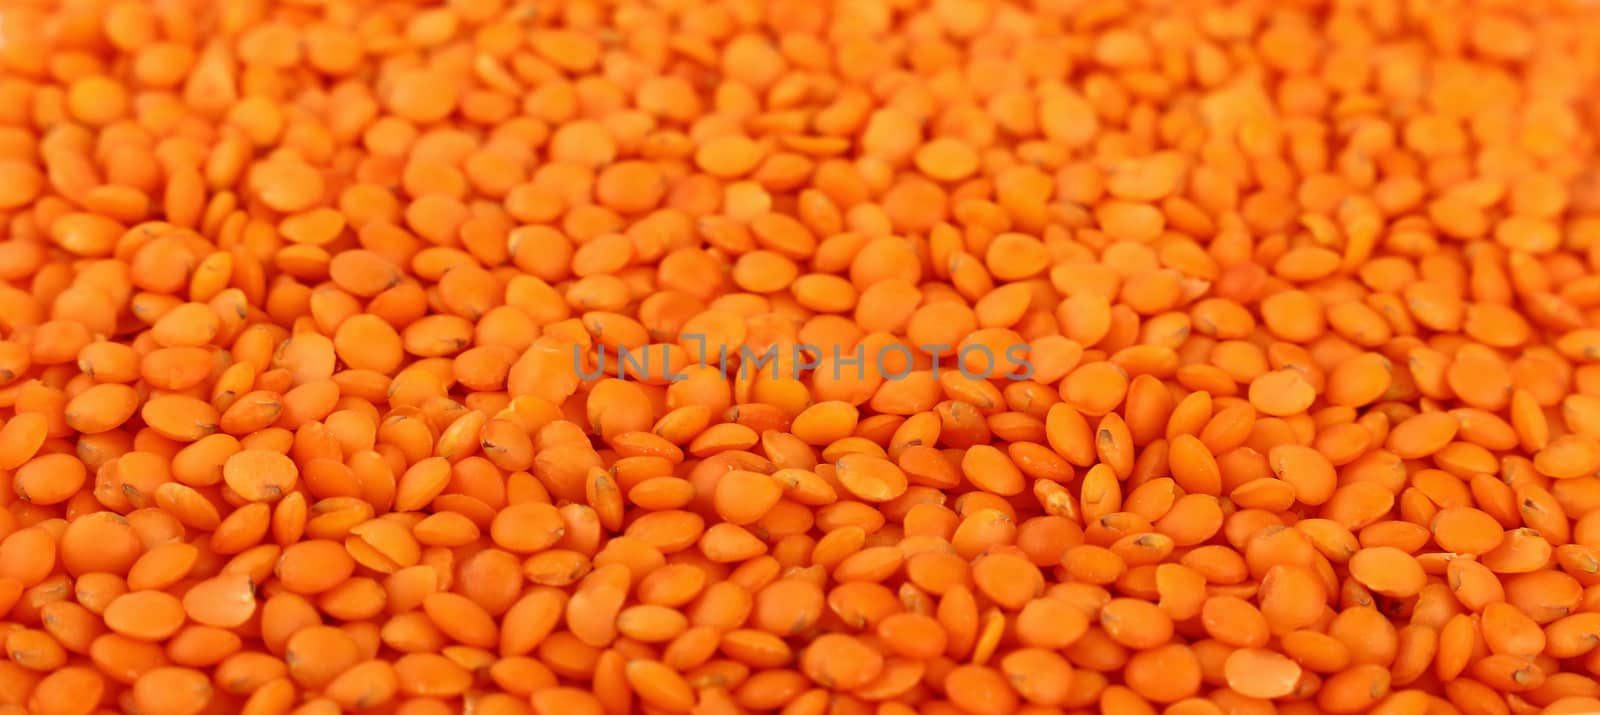 Orange lentil lens close up background by BreakingTheWalls